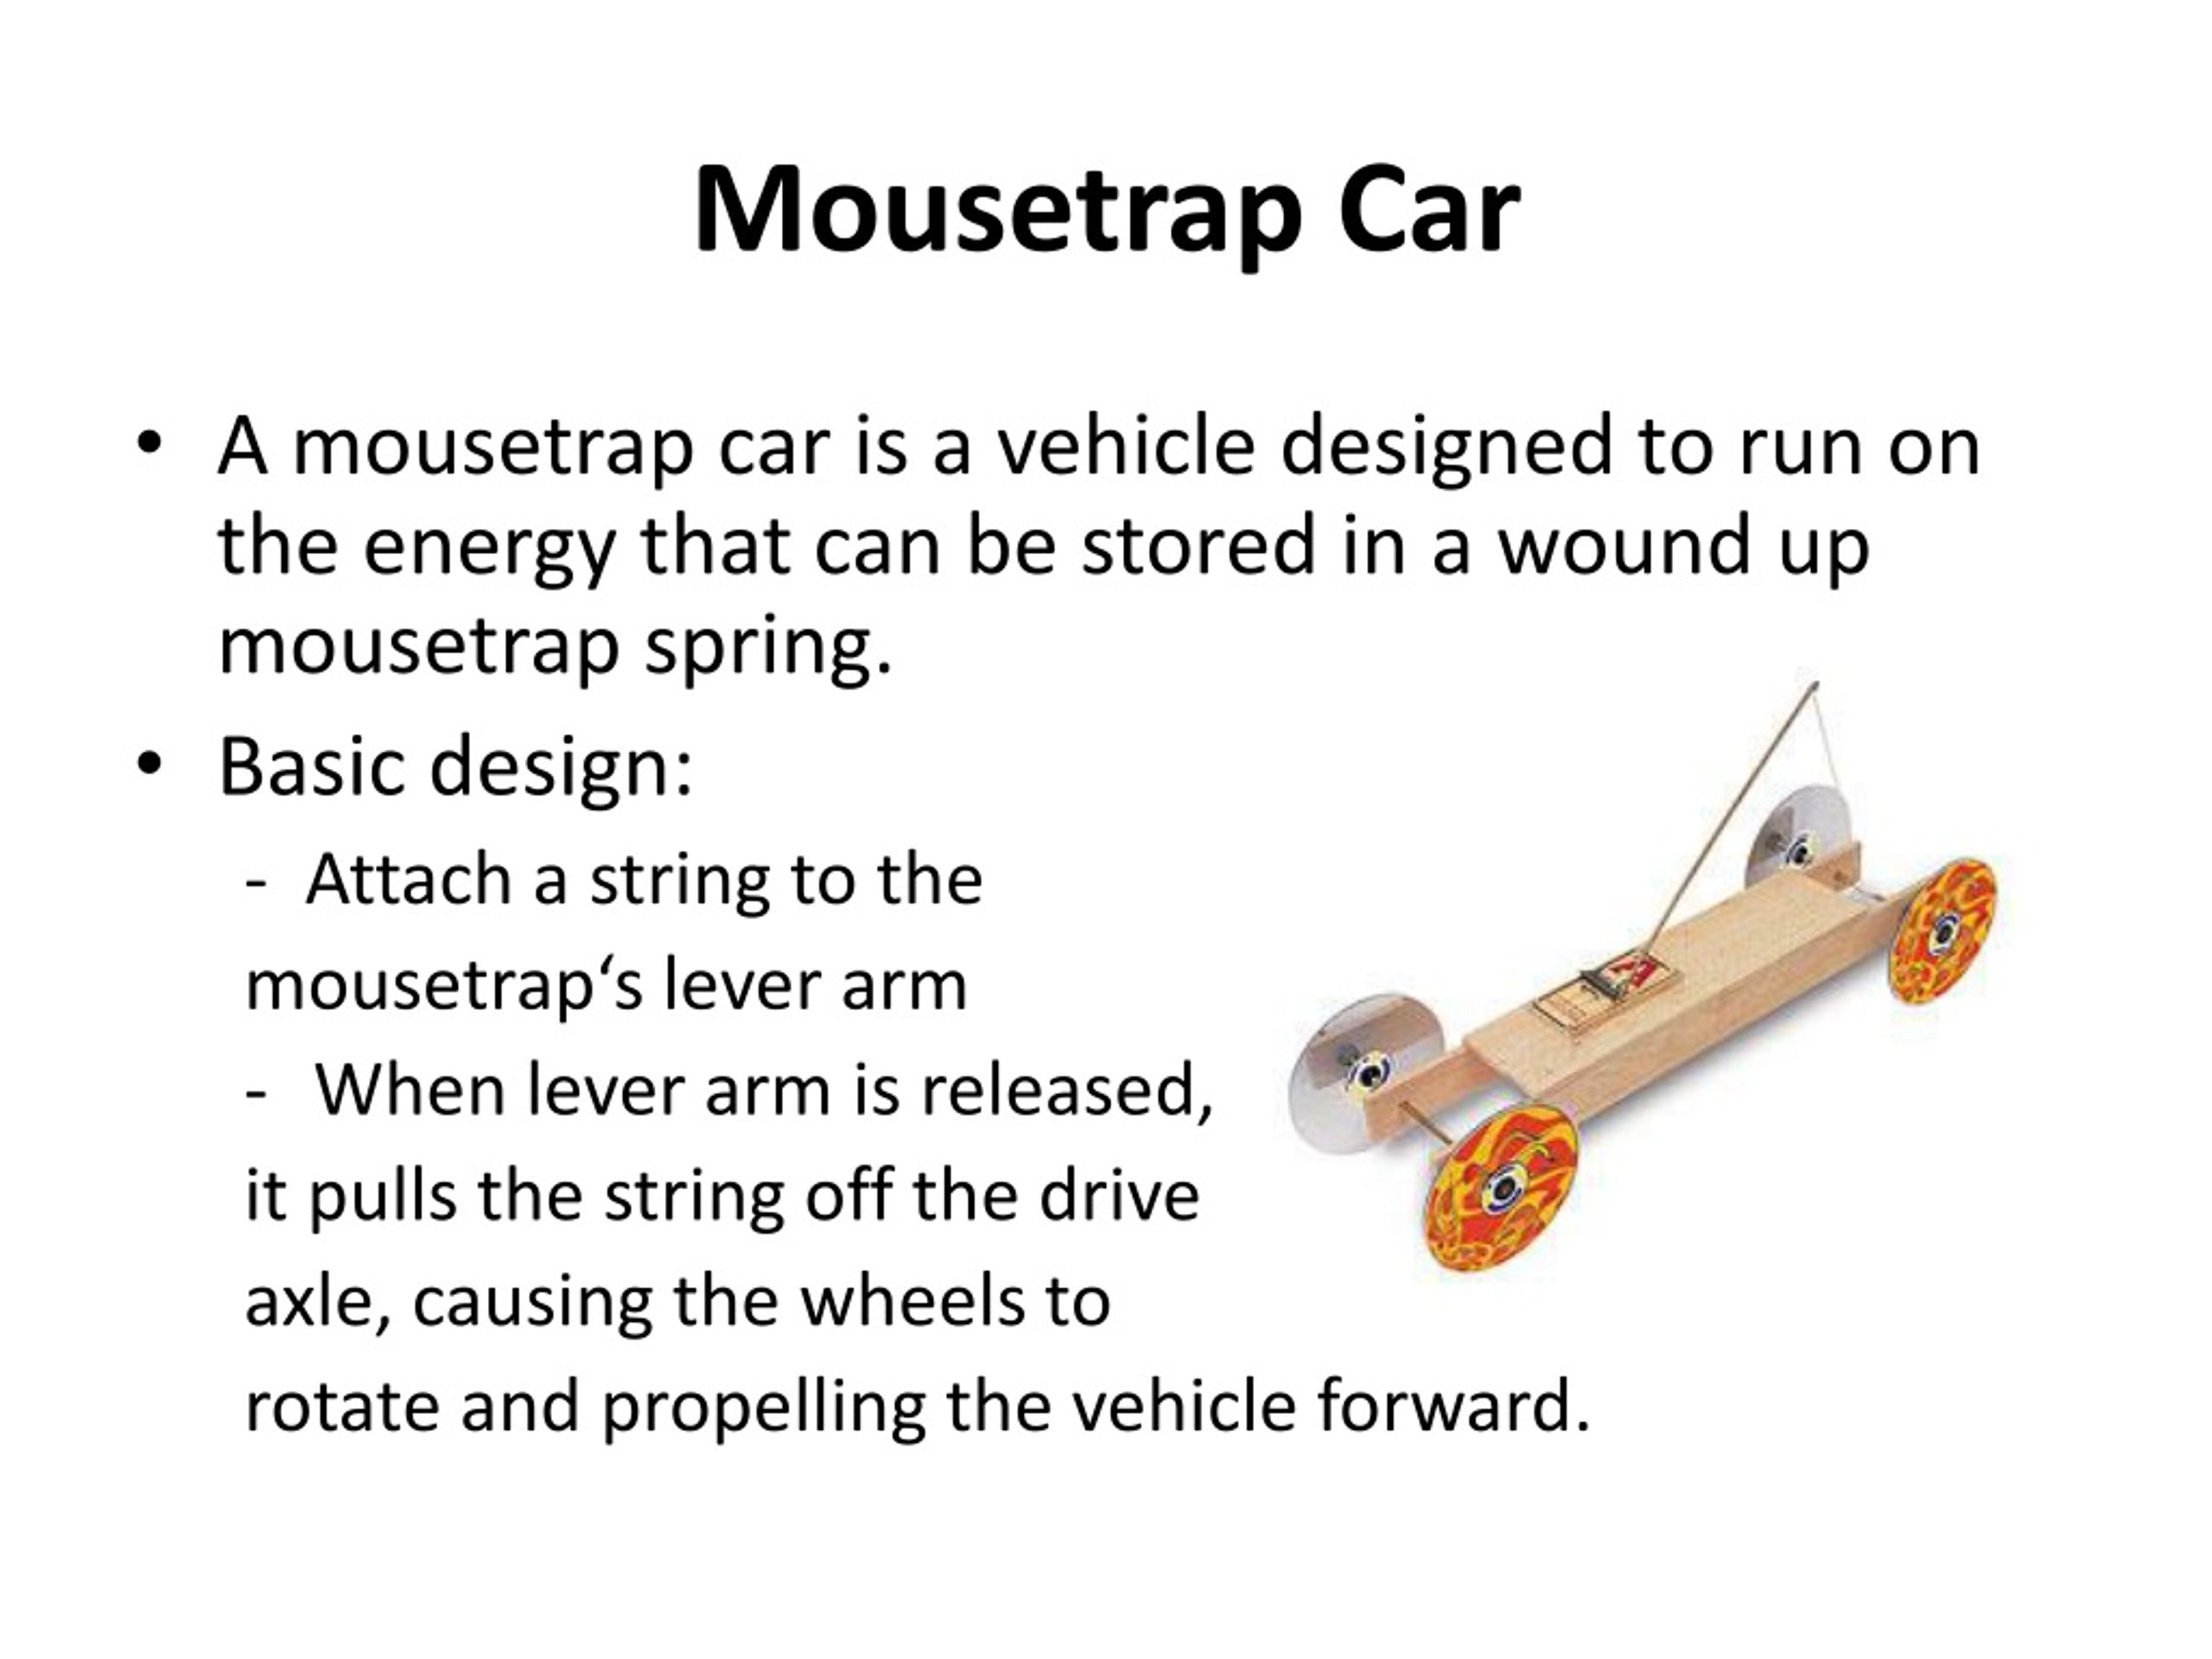 Mouse trap car